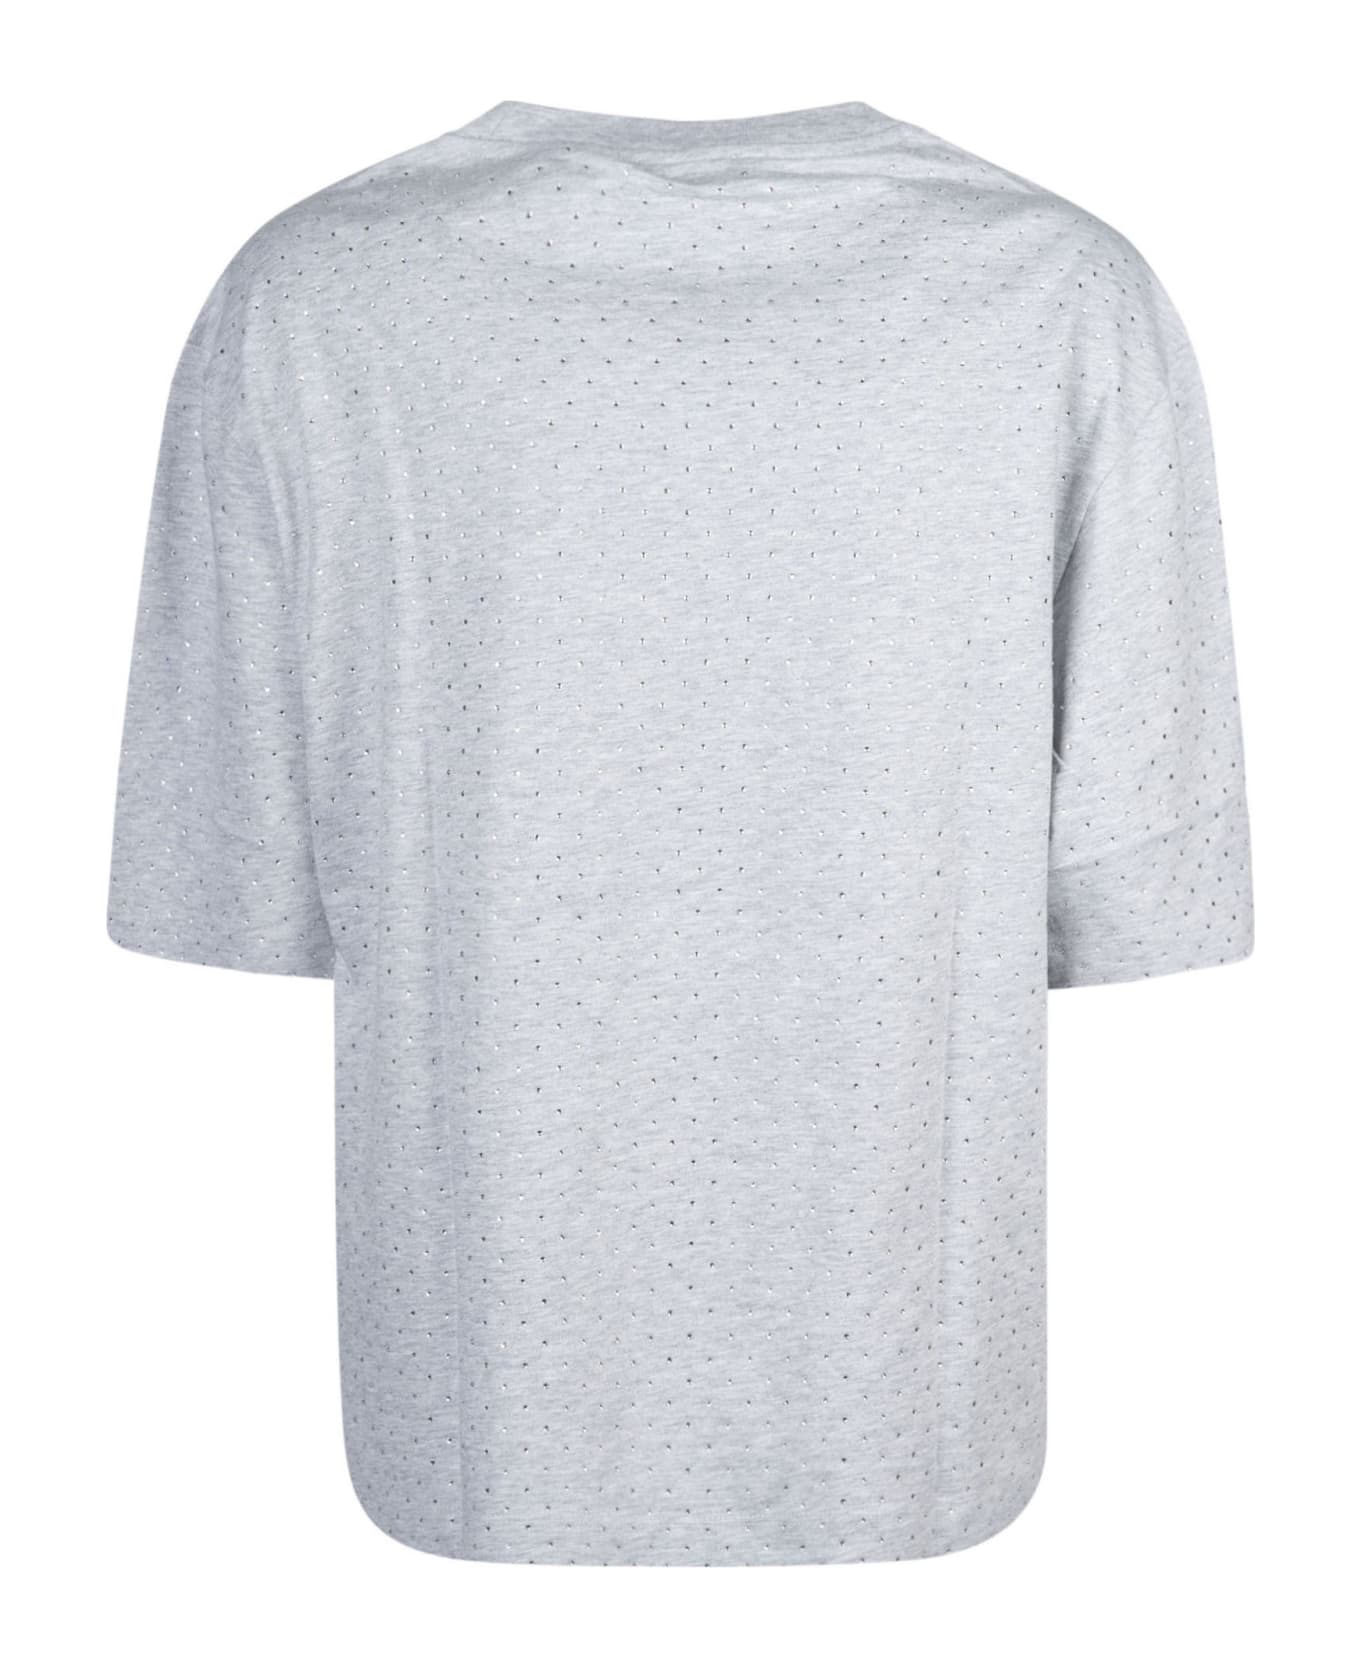 Paco Rabanne Rhinestones Embellished Logo T-shirt - Grey